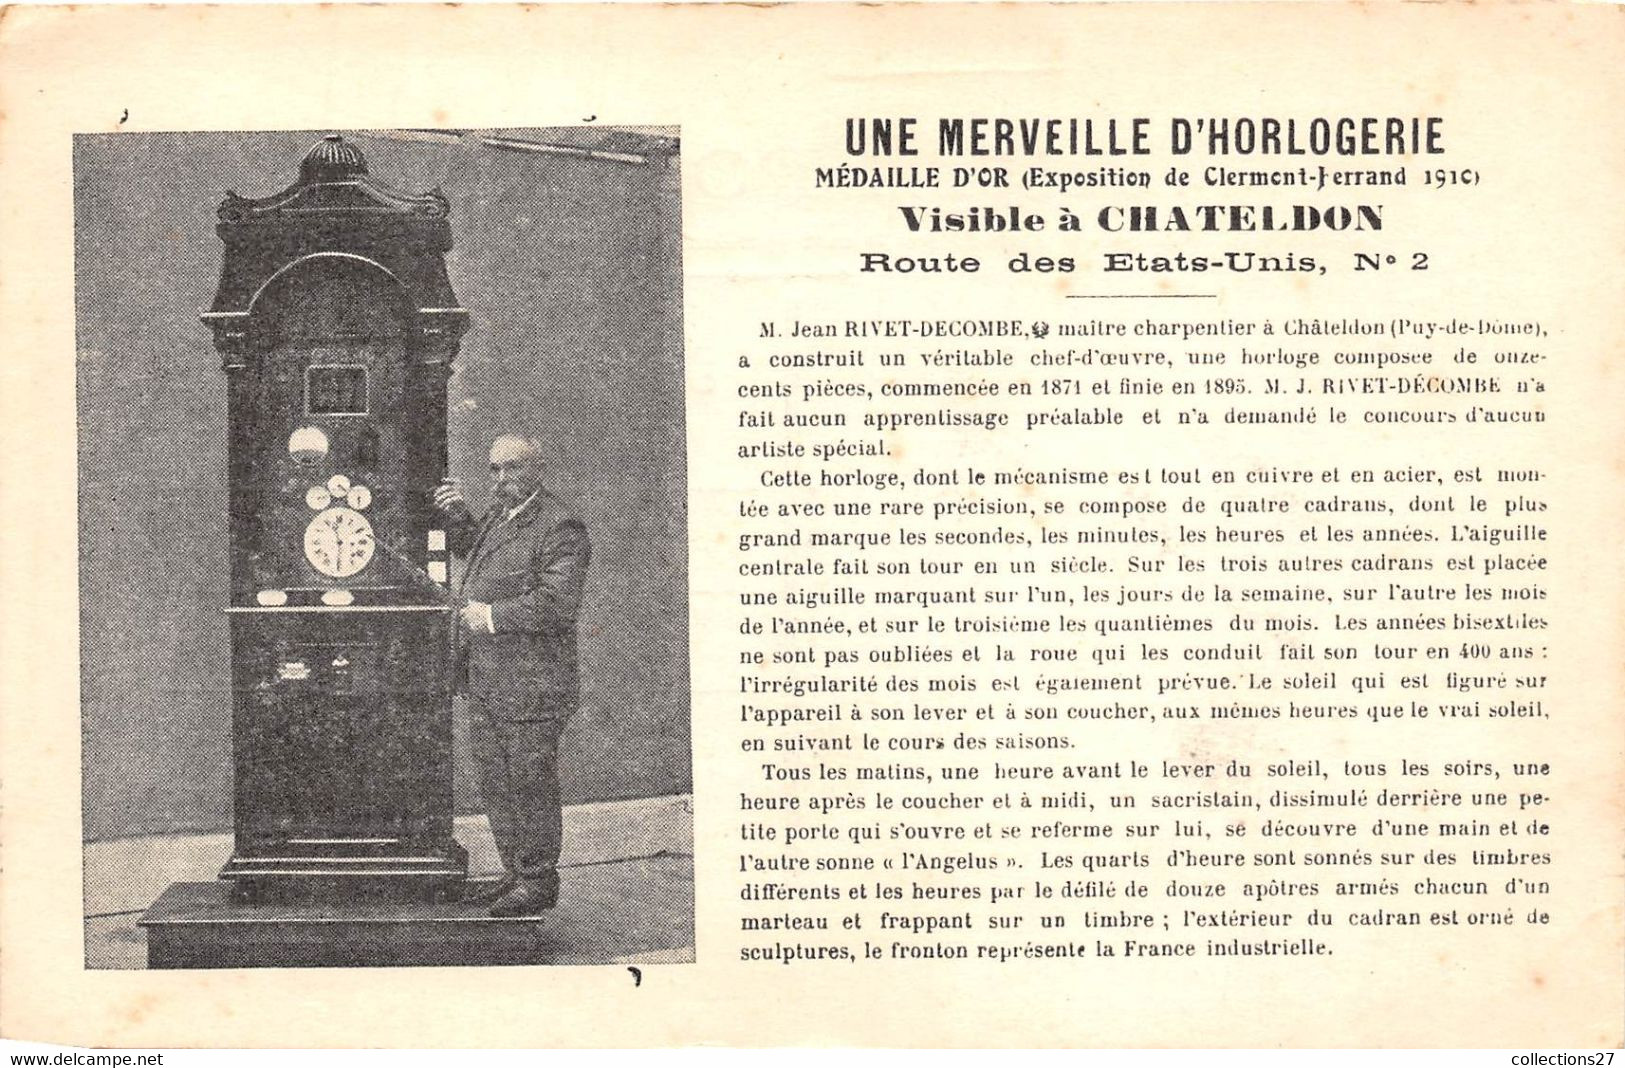 63-CHADELDON- UNE MERVEILLE D'HORLOGERIE-CONSTRUIT PAR JEAN-RIVET-DECOMBE MADAILLE D'OR - Chateldon